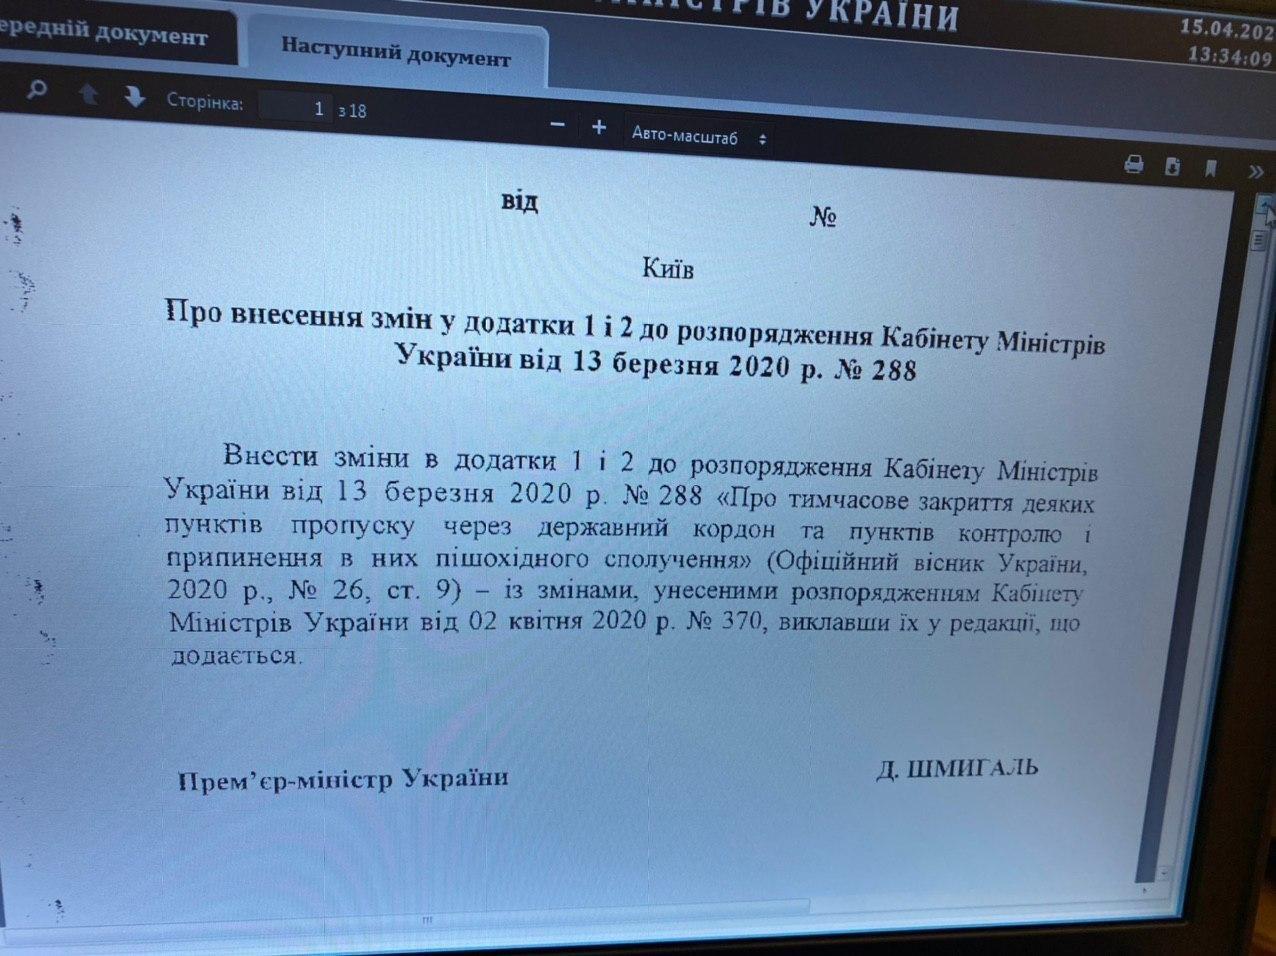 Уряд закриває ще 10 КПП на кордоні. Документ: Олексій Гончаренко у Telegram